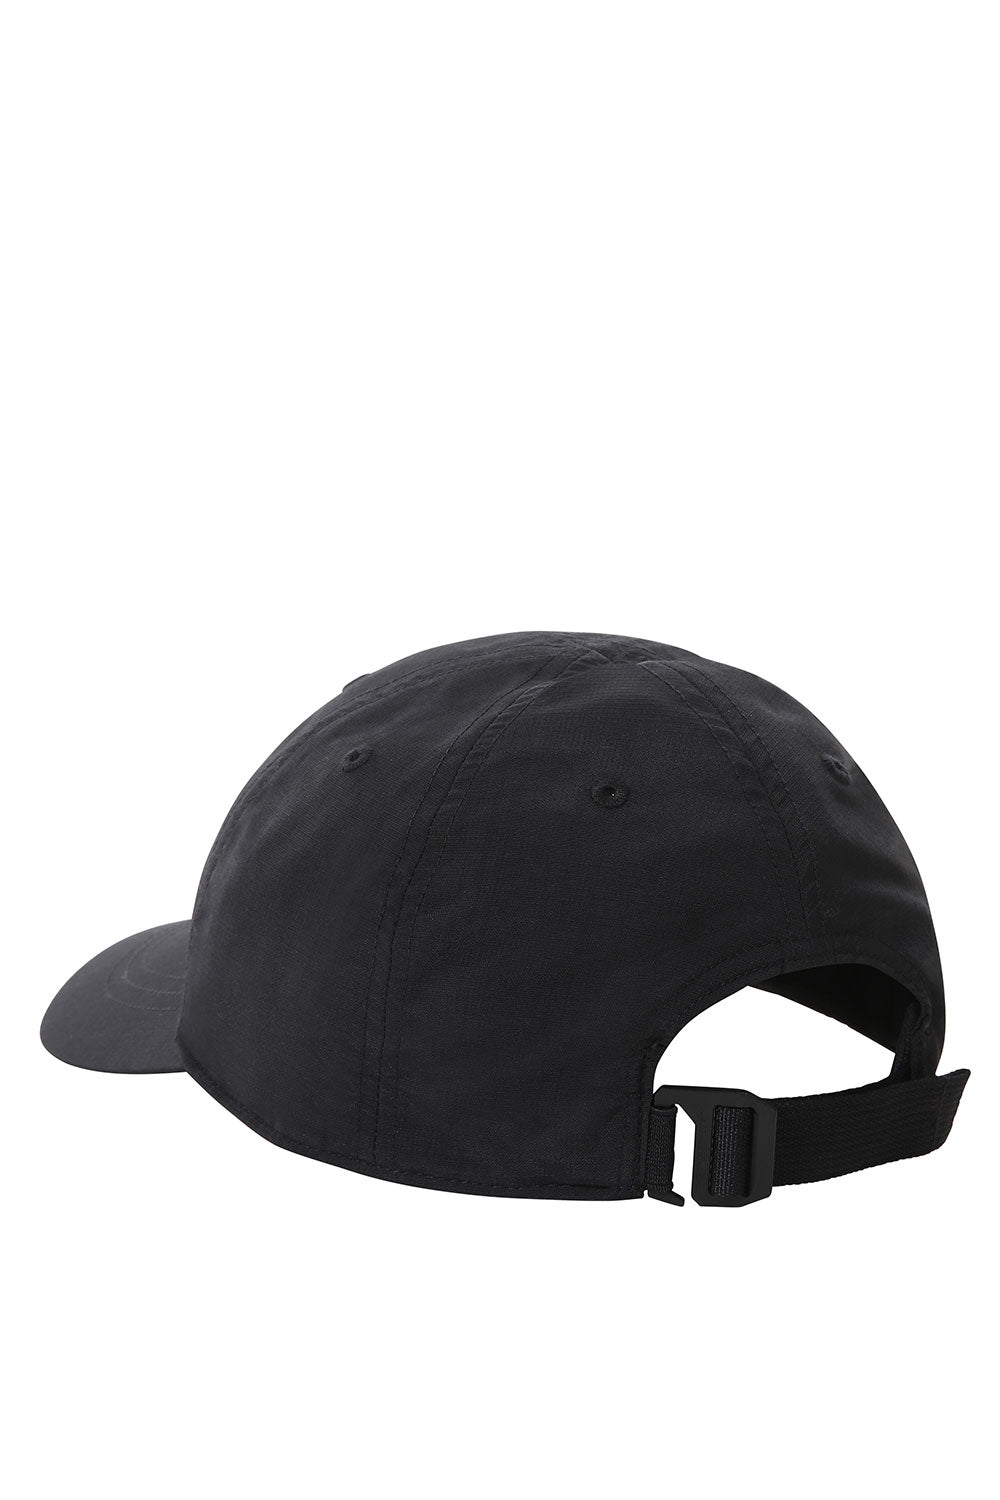 דה נורת' פייס כובע מצחיה Horizon בצבע שחור לגברים-The North Face-One Size-נאקו